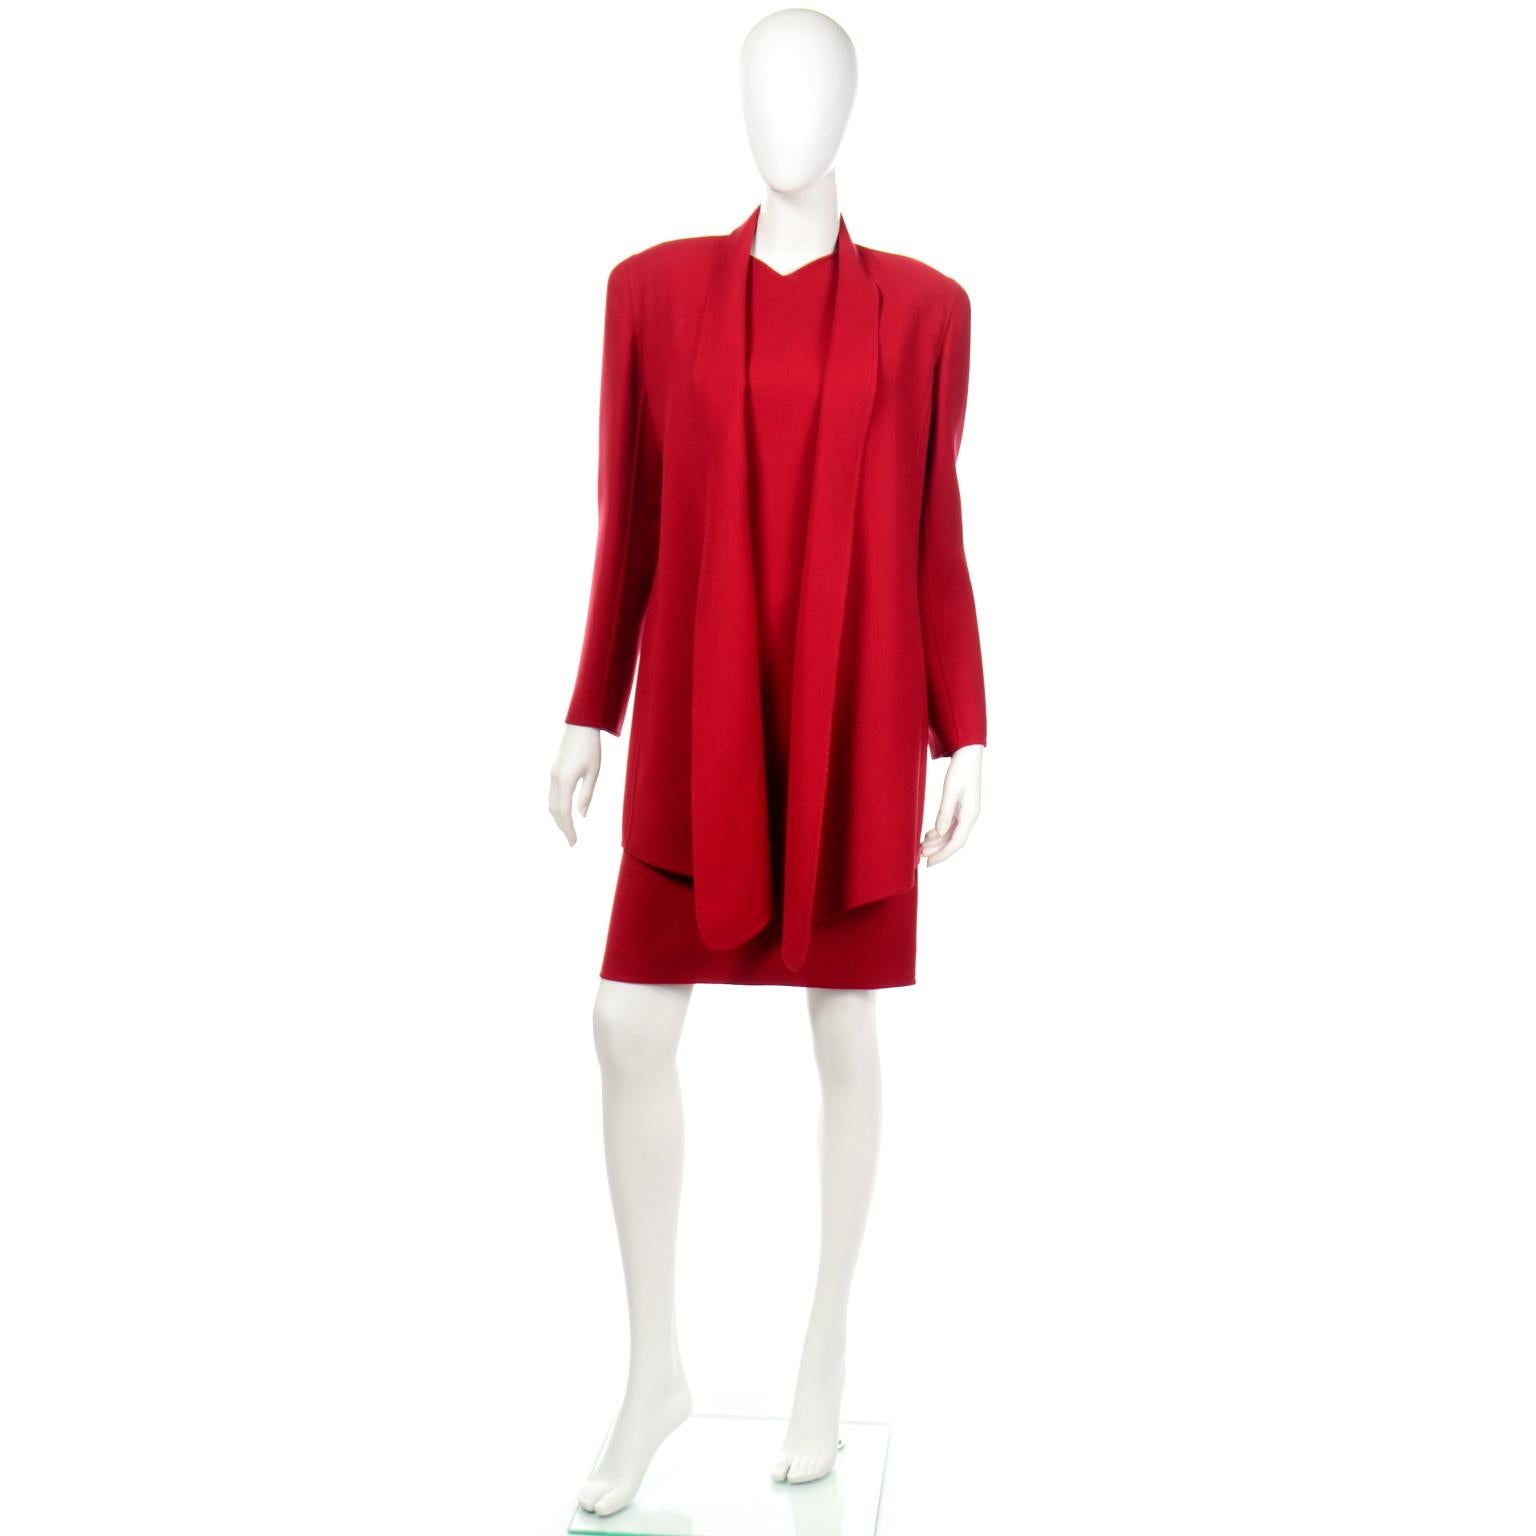 Voici un ensemble 2 pièces vintage Oscar de la Renta composé d'une robe et d'une veste en laine mélangée rouge. Ce magnifique ensemble 2 pièces comprend une robe sans manches très flatteuse avec des coutures surpiquées qui soulignent la taille. La